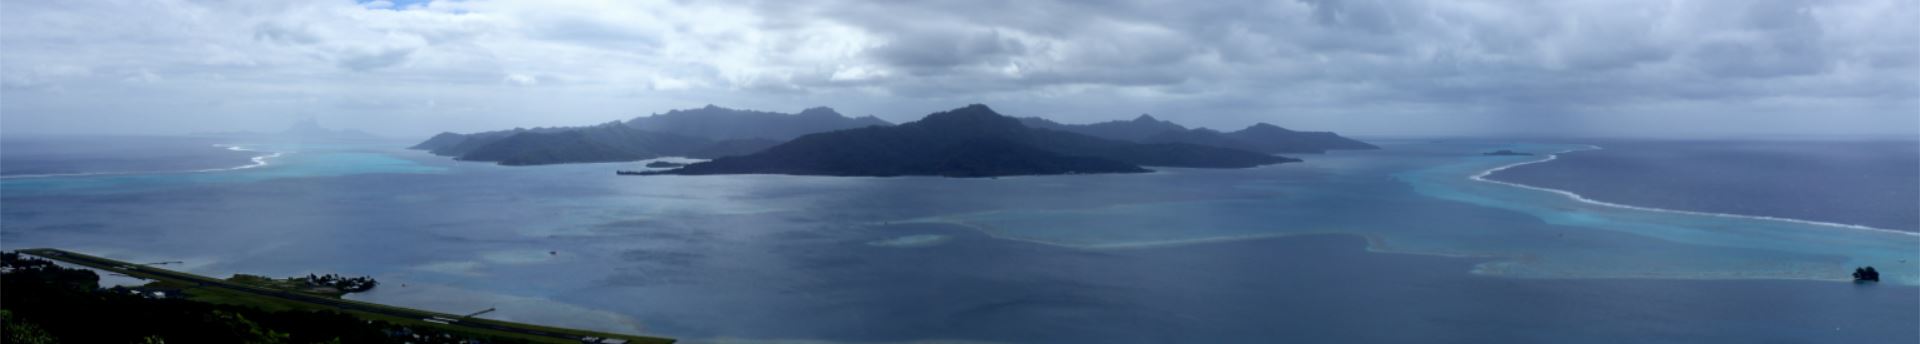 Raiatea: Tahaa und Bora Bora (links schwach zu sehen) im Hintergrund